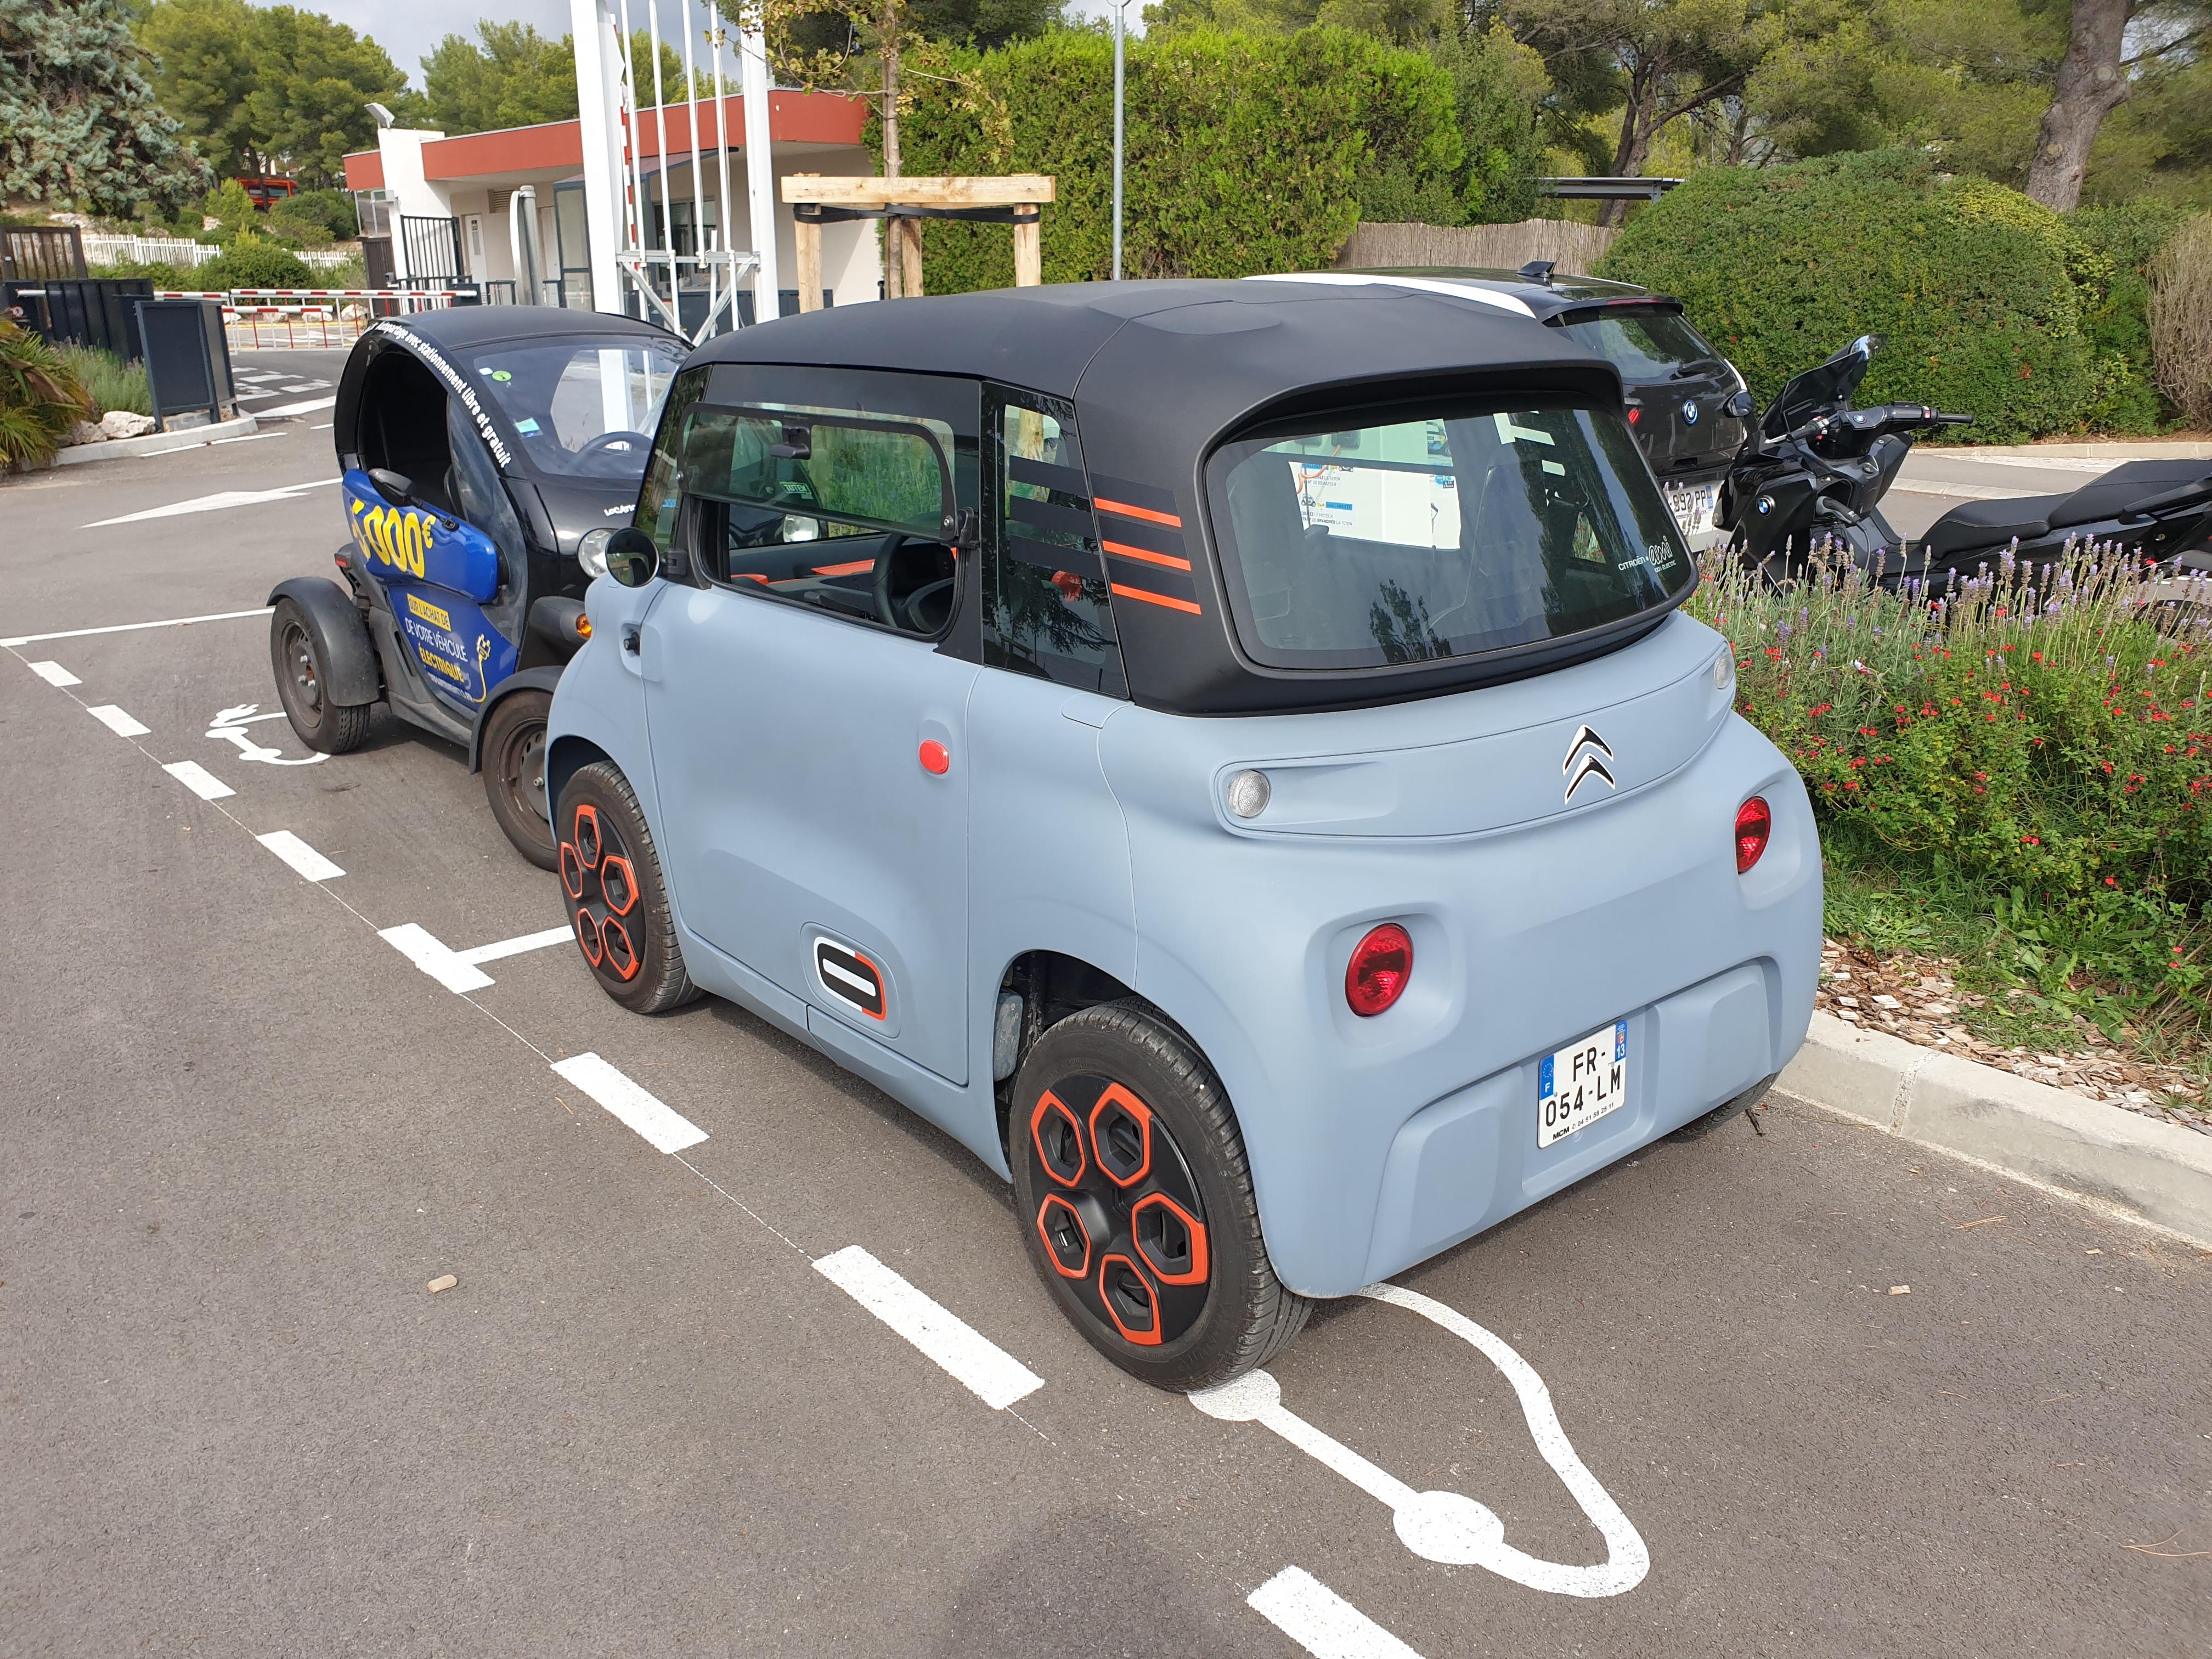 Essai: Citroën AMI, mobilité disruptive 